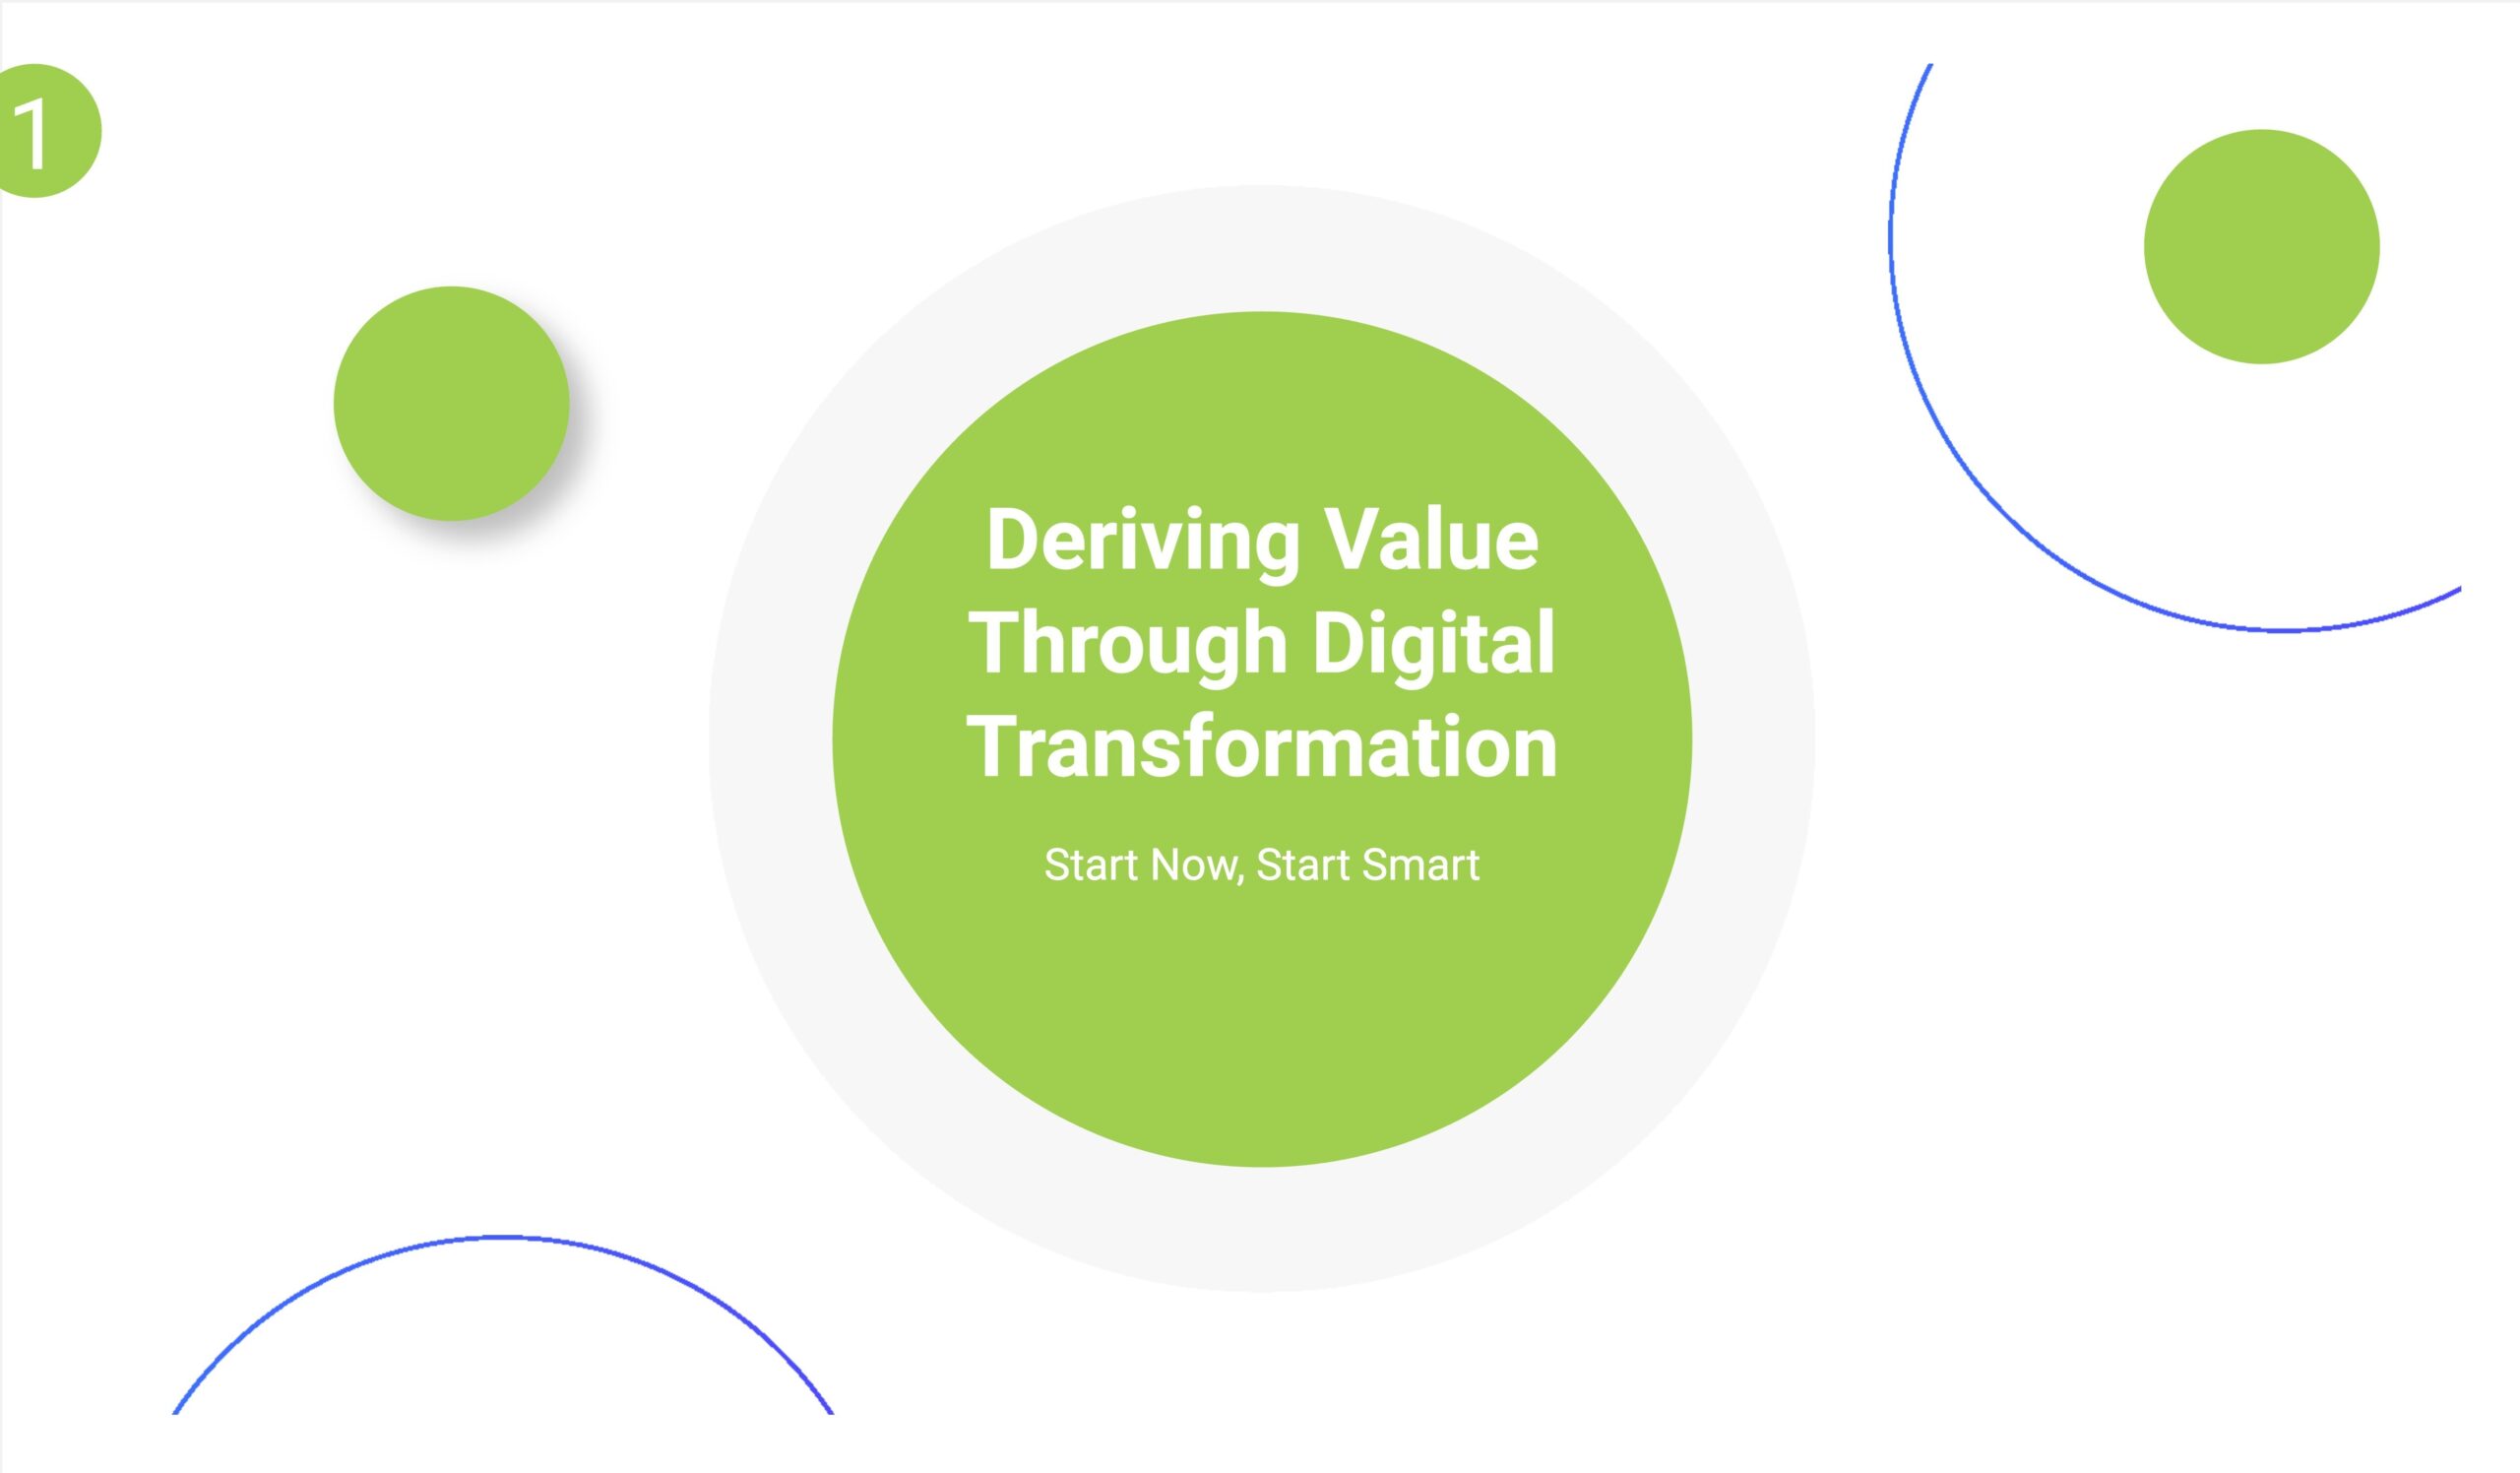 Deriving digital value through digital transformation